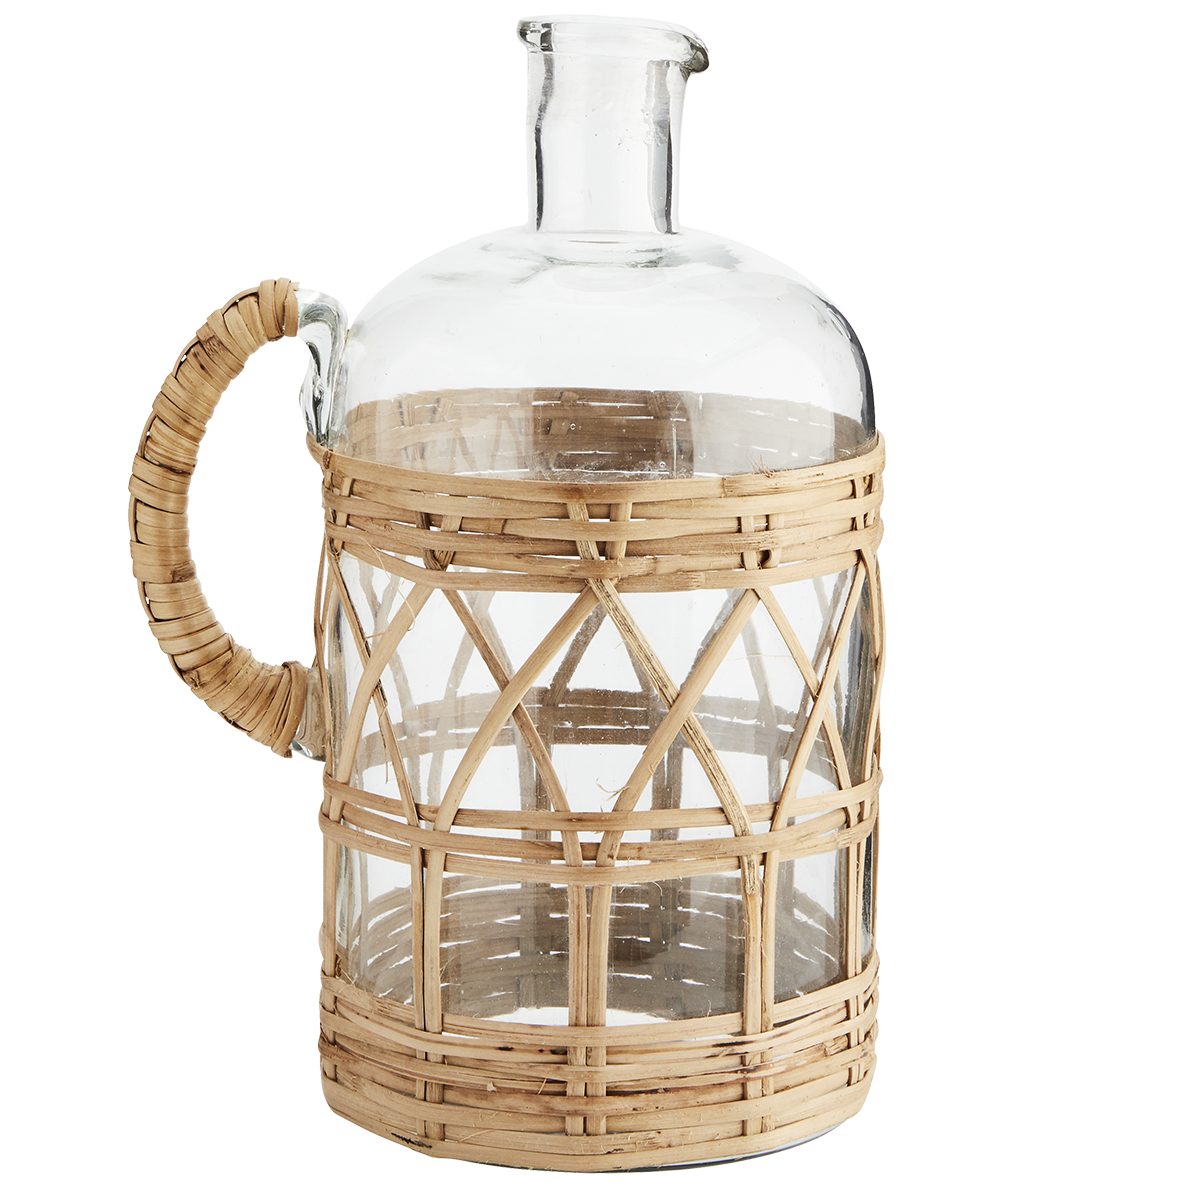 Glass jug w/ cane